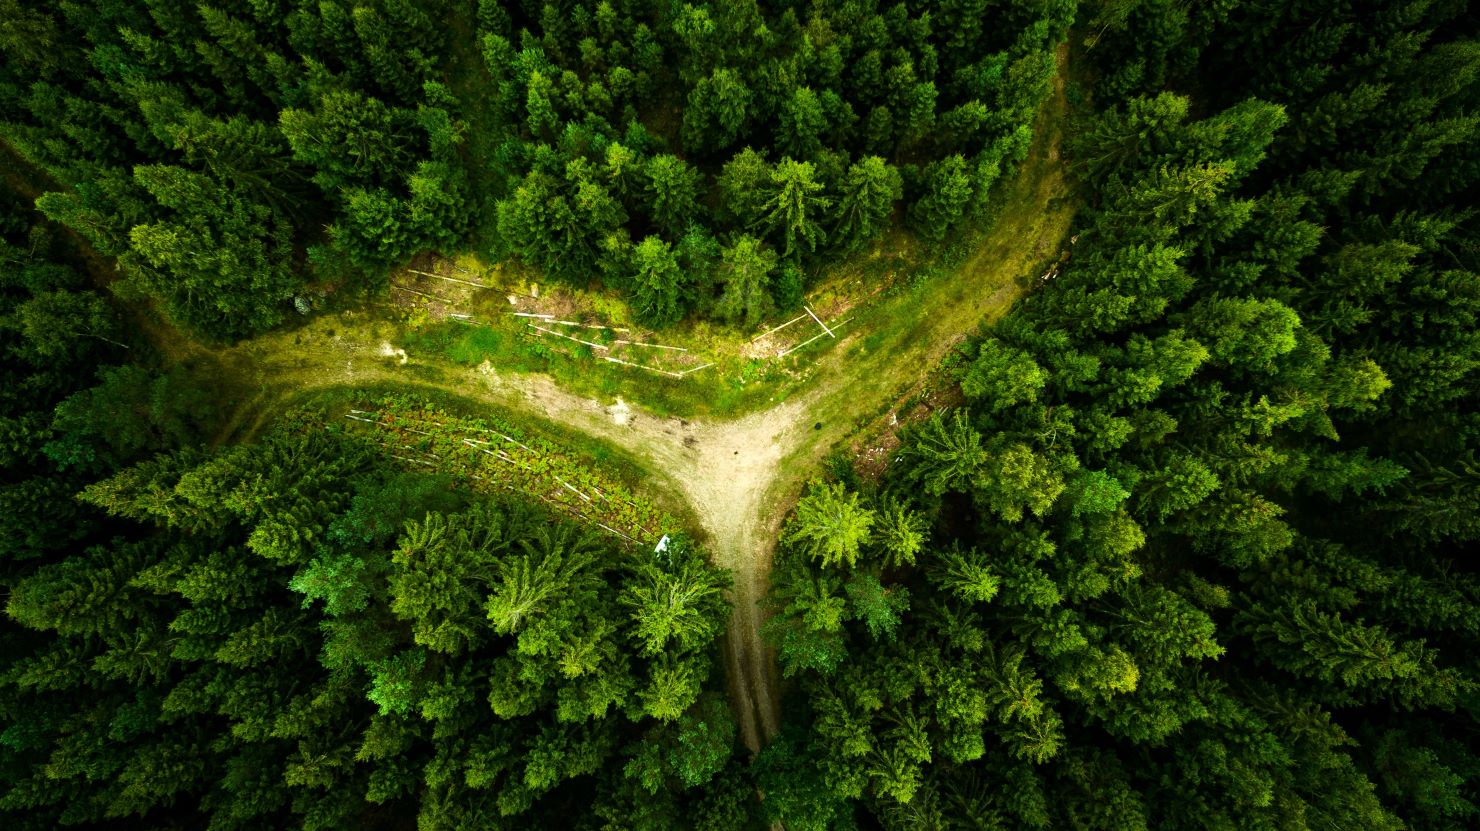 More information about "Δασικοί χάρτες: Αναλυτικός οδηγός για τους ιδιοκτήτες δασικών εκτάσεων"